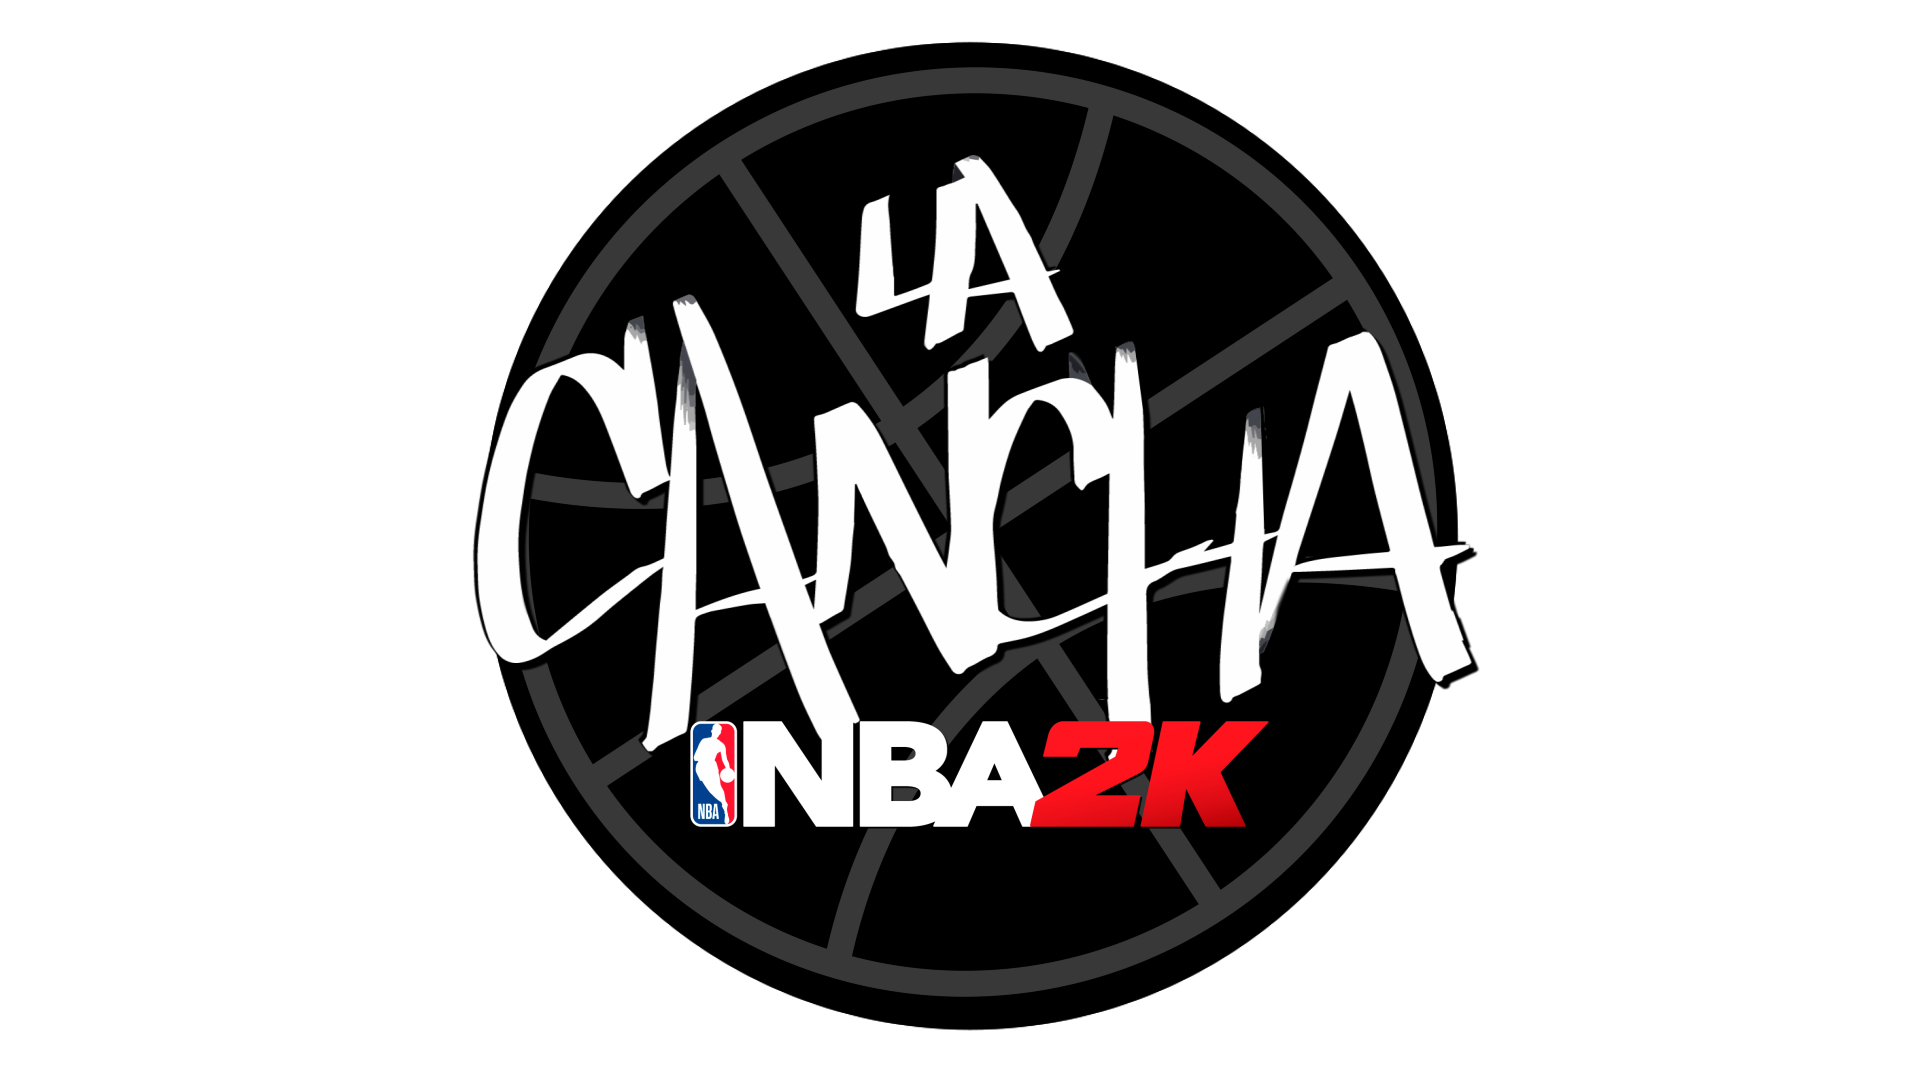 La Cancha de NBA 2K